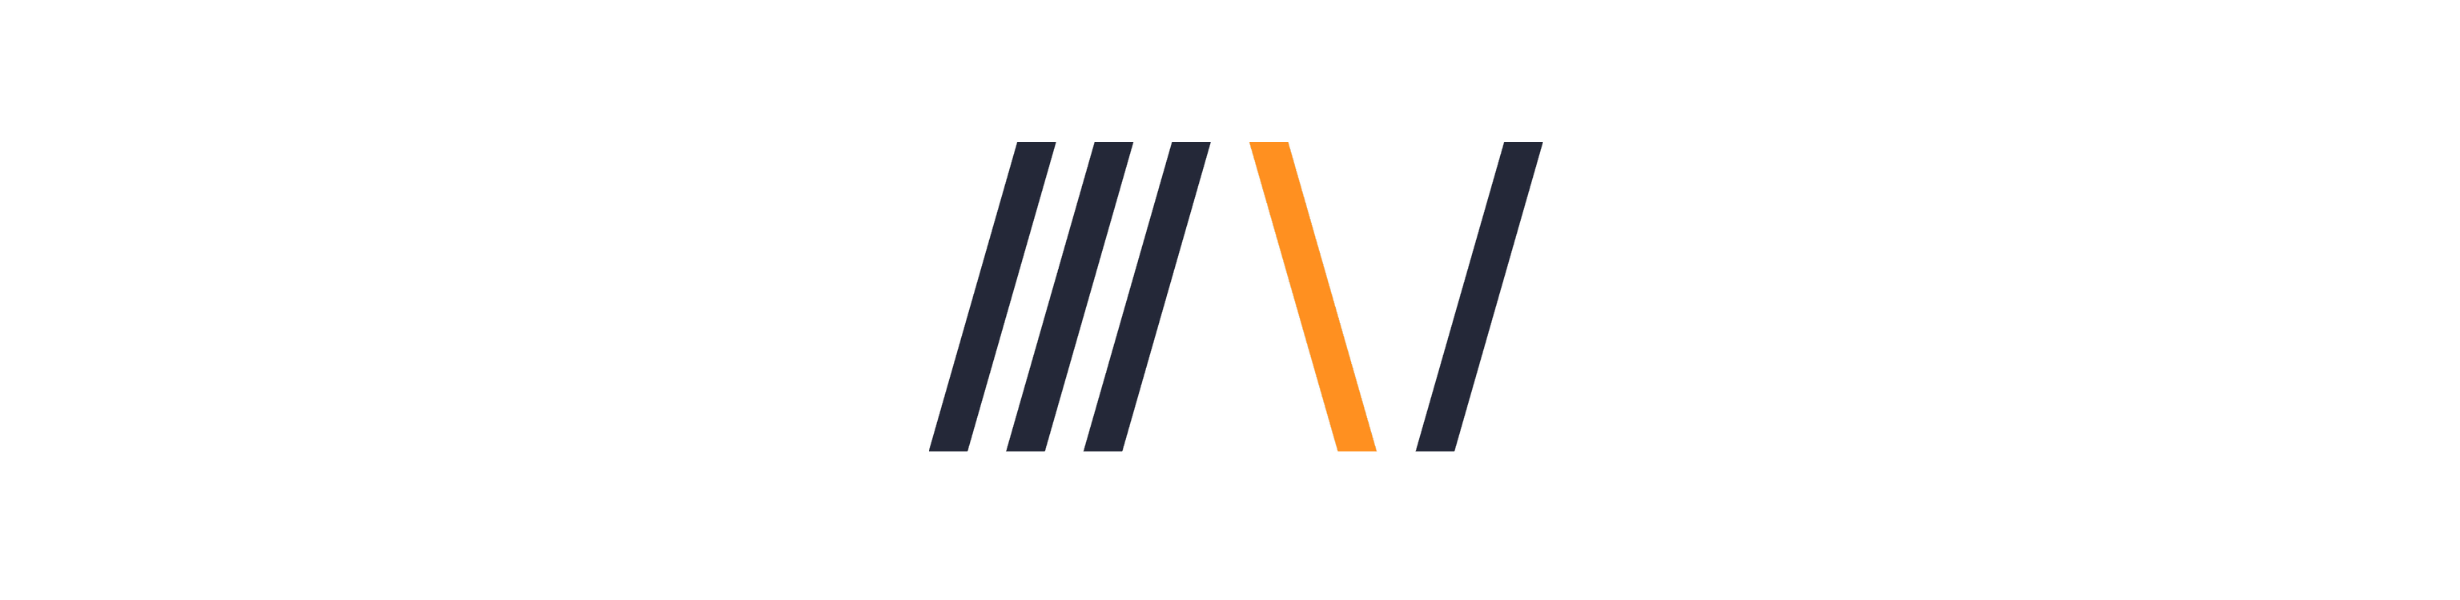 DevBoost Logo Generation 4